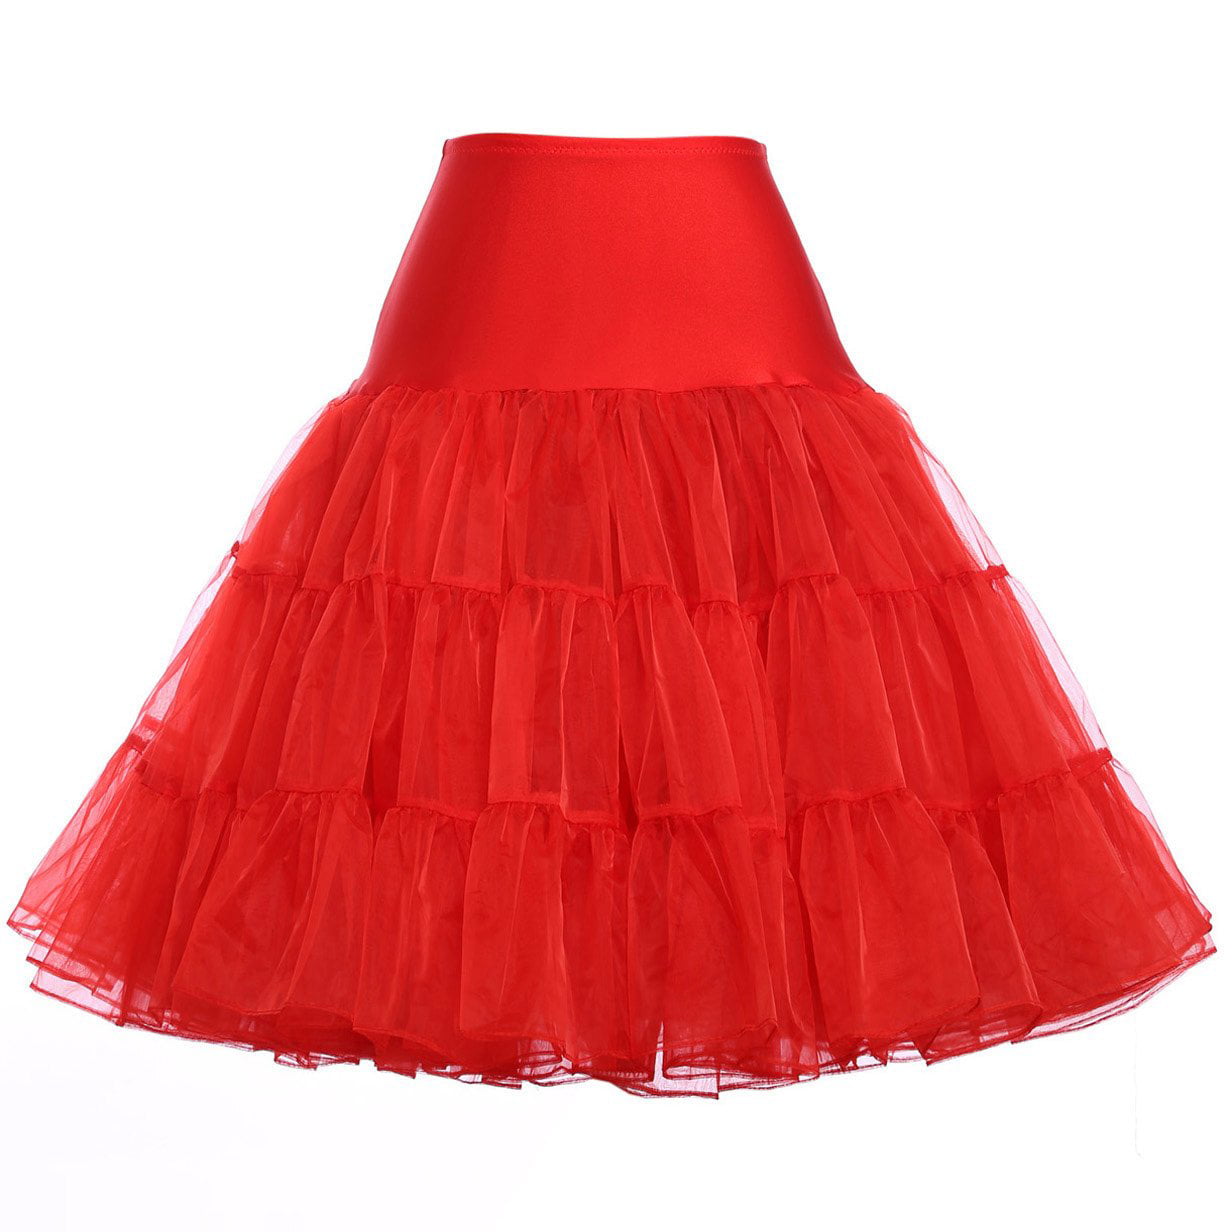 Boolavard Women 50s Petticoat Skirts Tutu Crinoline Underskirt 